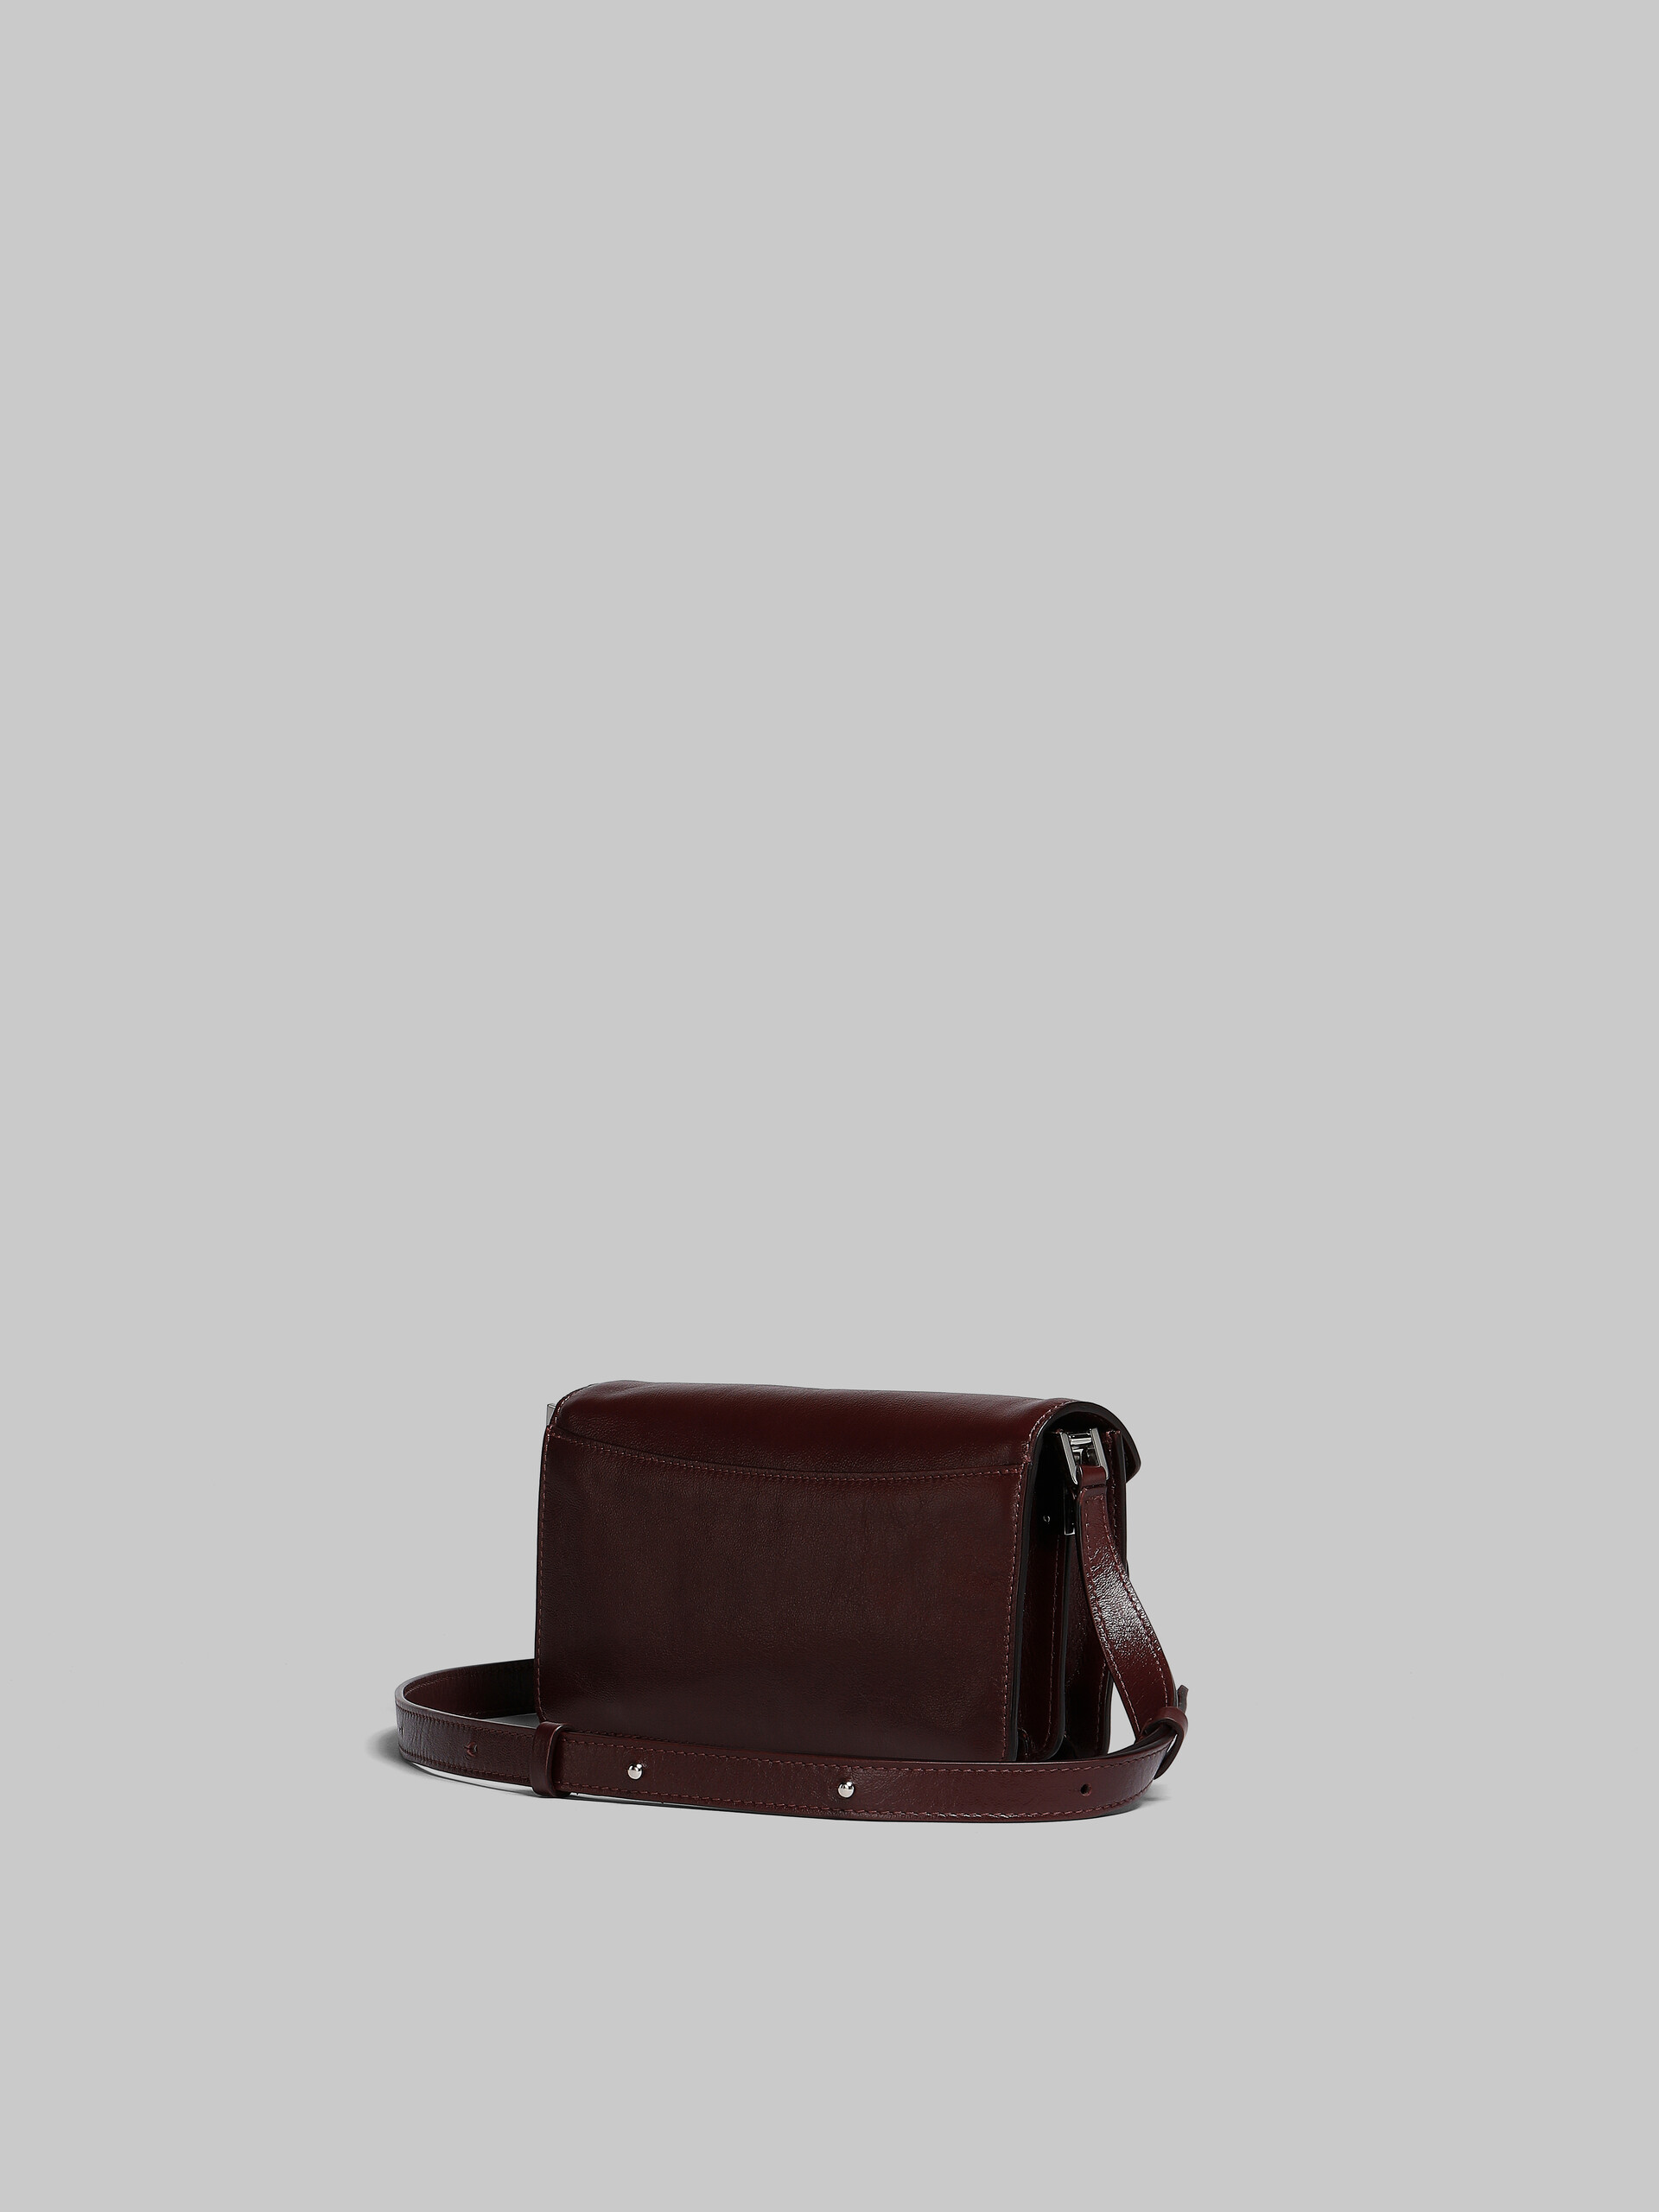 Red leather Trunk Soft bag - Shoulder Bags - Image 2